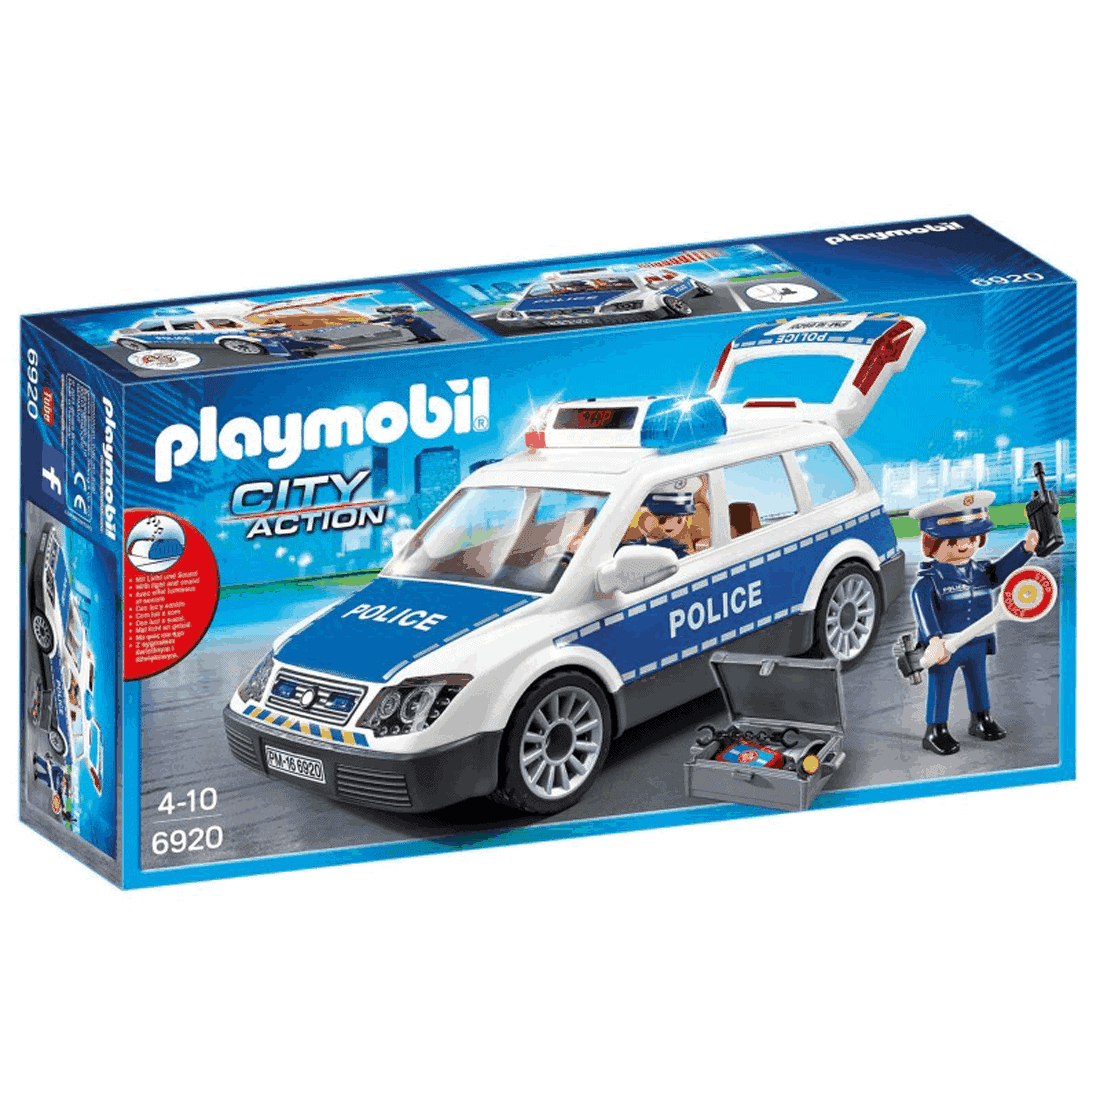 Playmobil - Περιπολικό Όχημα Με Φάρο Και Σειρήνα